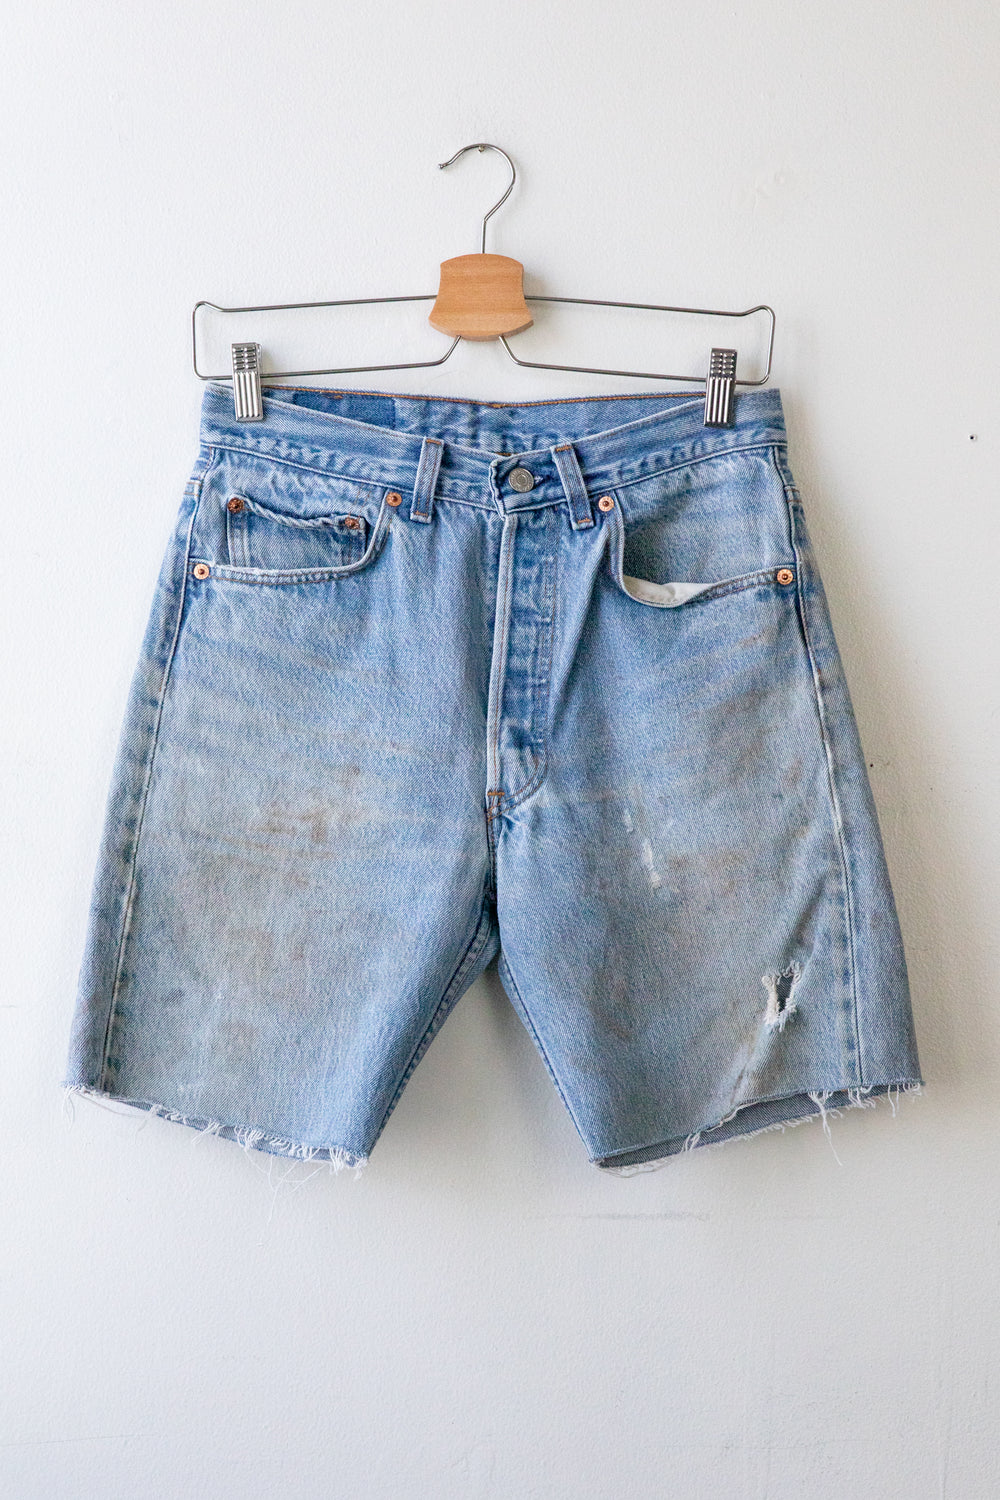 Vintage Levi's Shorts 002